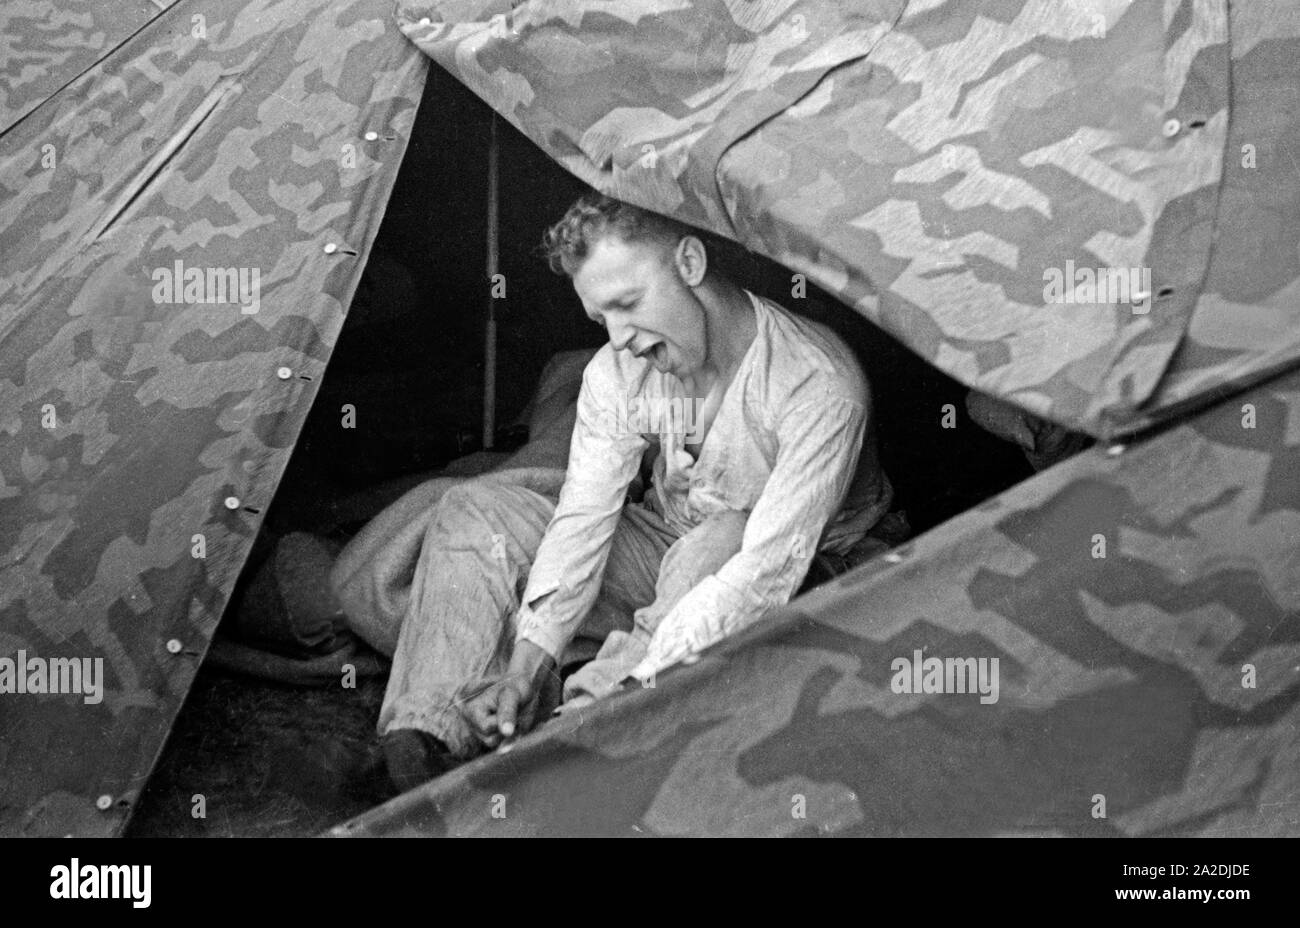 Rekrut der Flieger Ausbildungsstelle Schönwalde bereitet sich auf die Nachtruhe im Zelt vor, Deutschland 1930er Jahre. Recruit preparing to sleep in the tent, Germany 1930s. Stock Photo